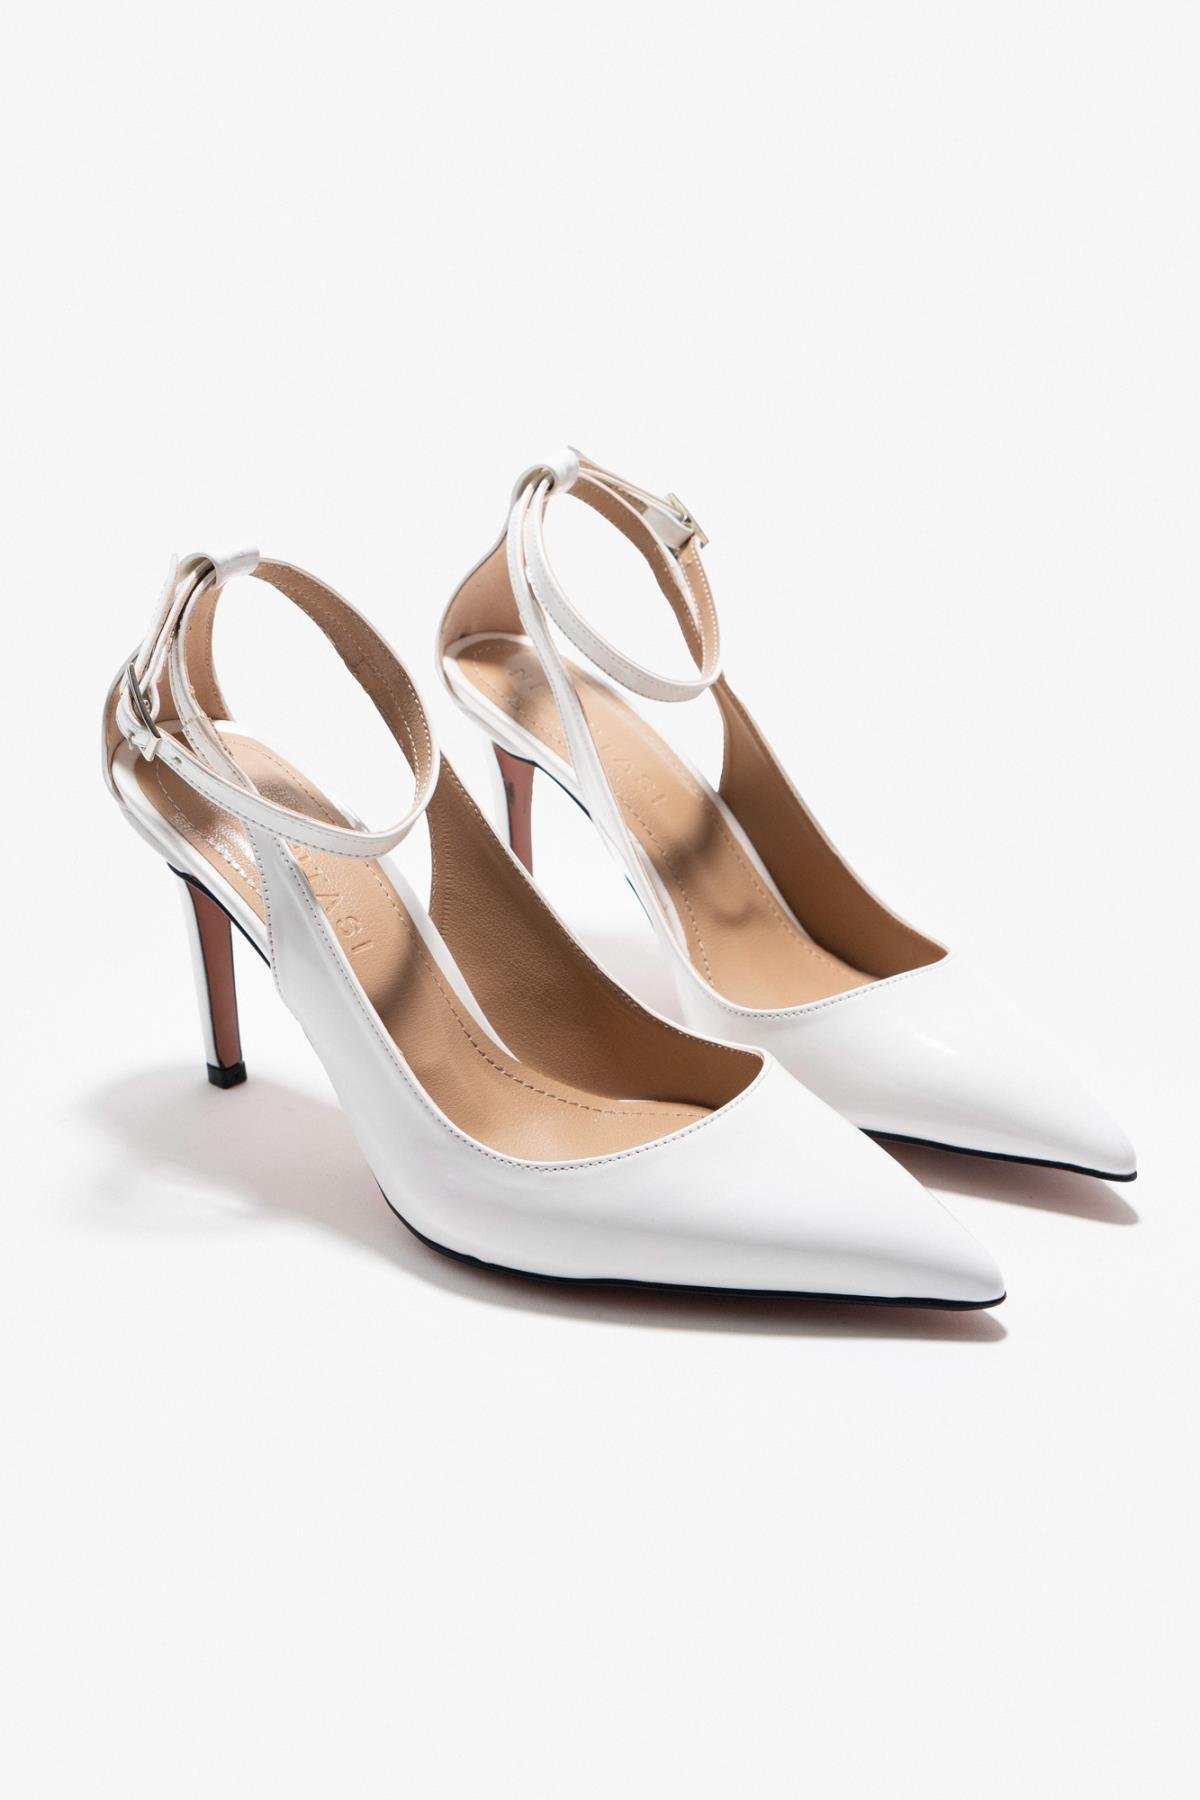 Antoni̇a Beyaz Rugan Si̇vri̇ Burun Bi̇lek Bağlı Topuklu Ayakkabı 